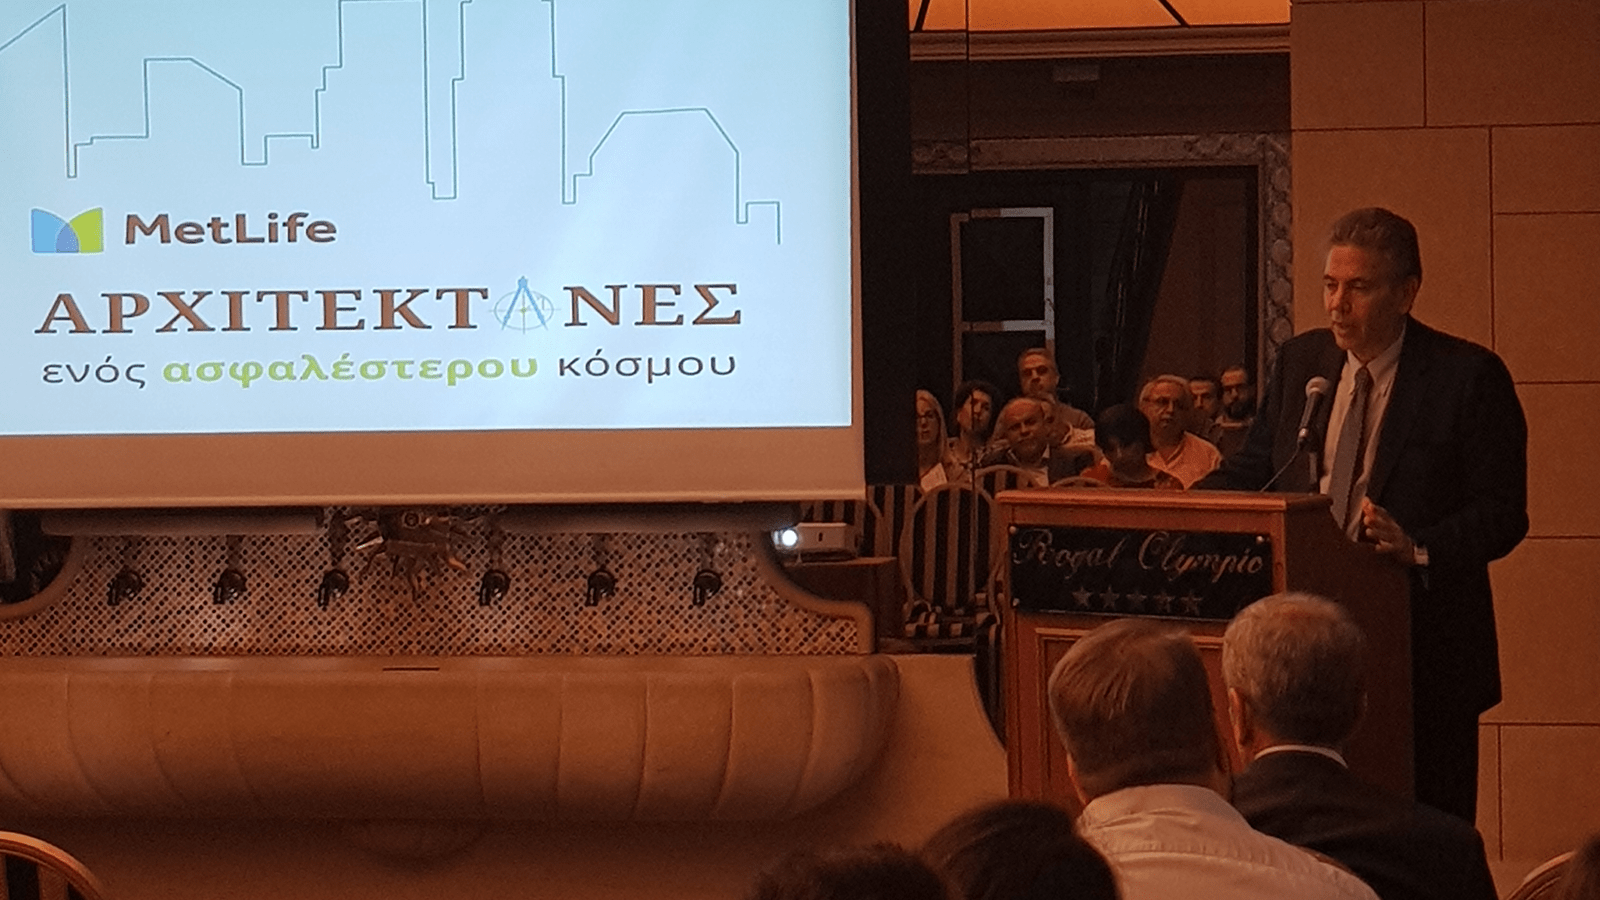 Κατερίνα Βασιλάκη: 35 χρόνια στην ασφαλιστική αγορά και τη MetLife